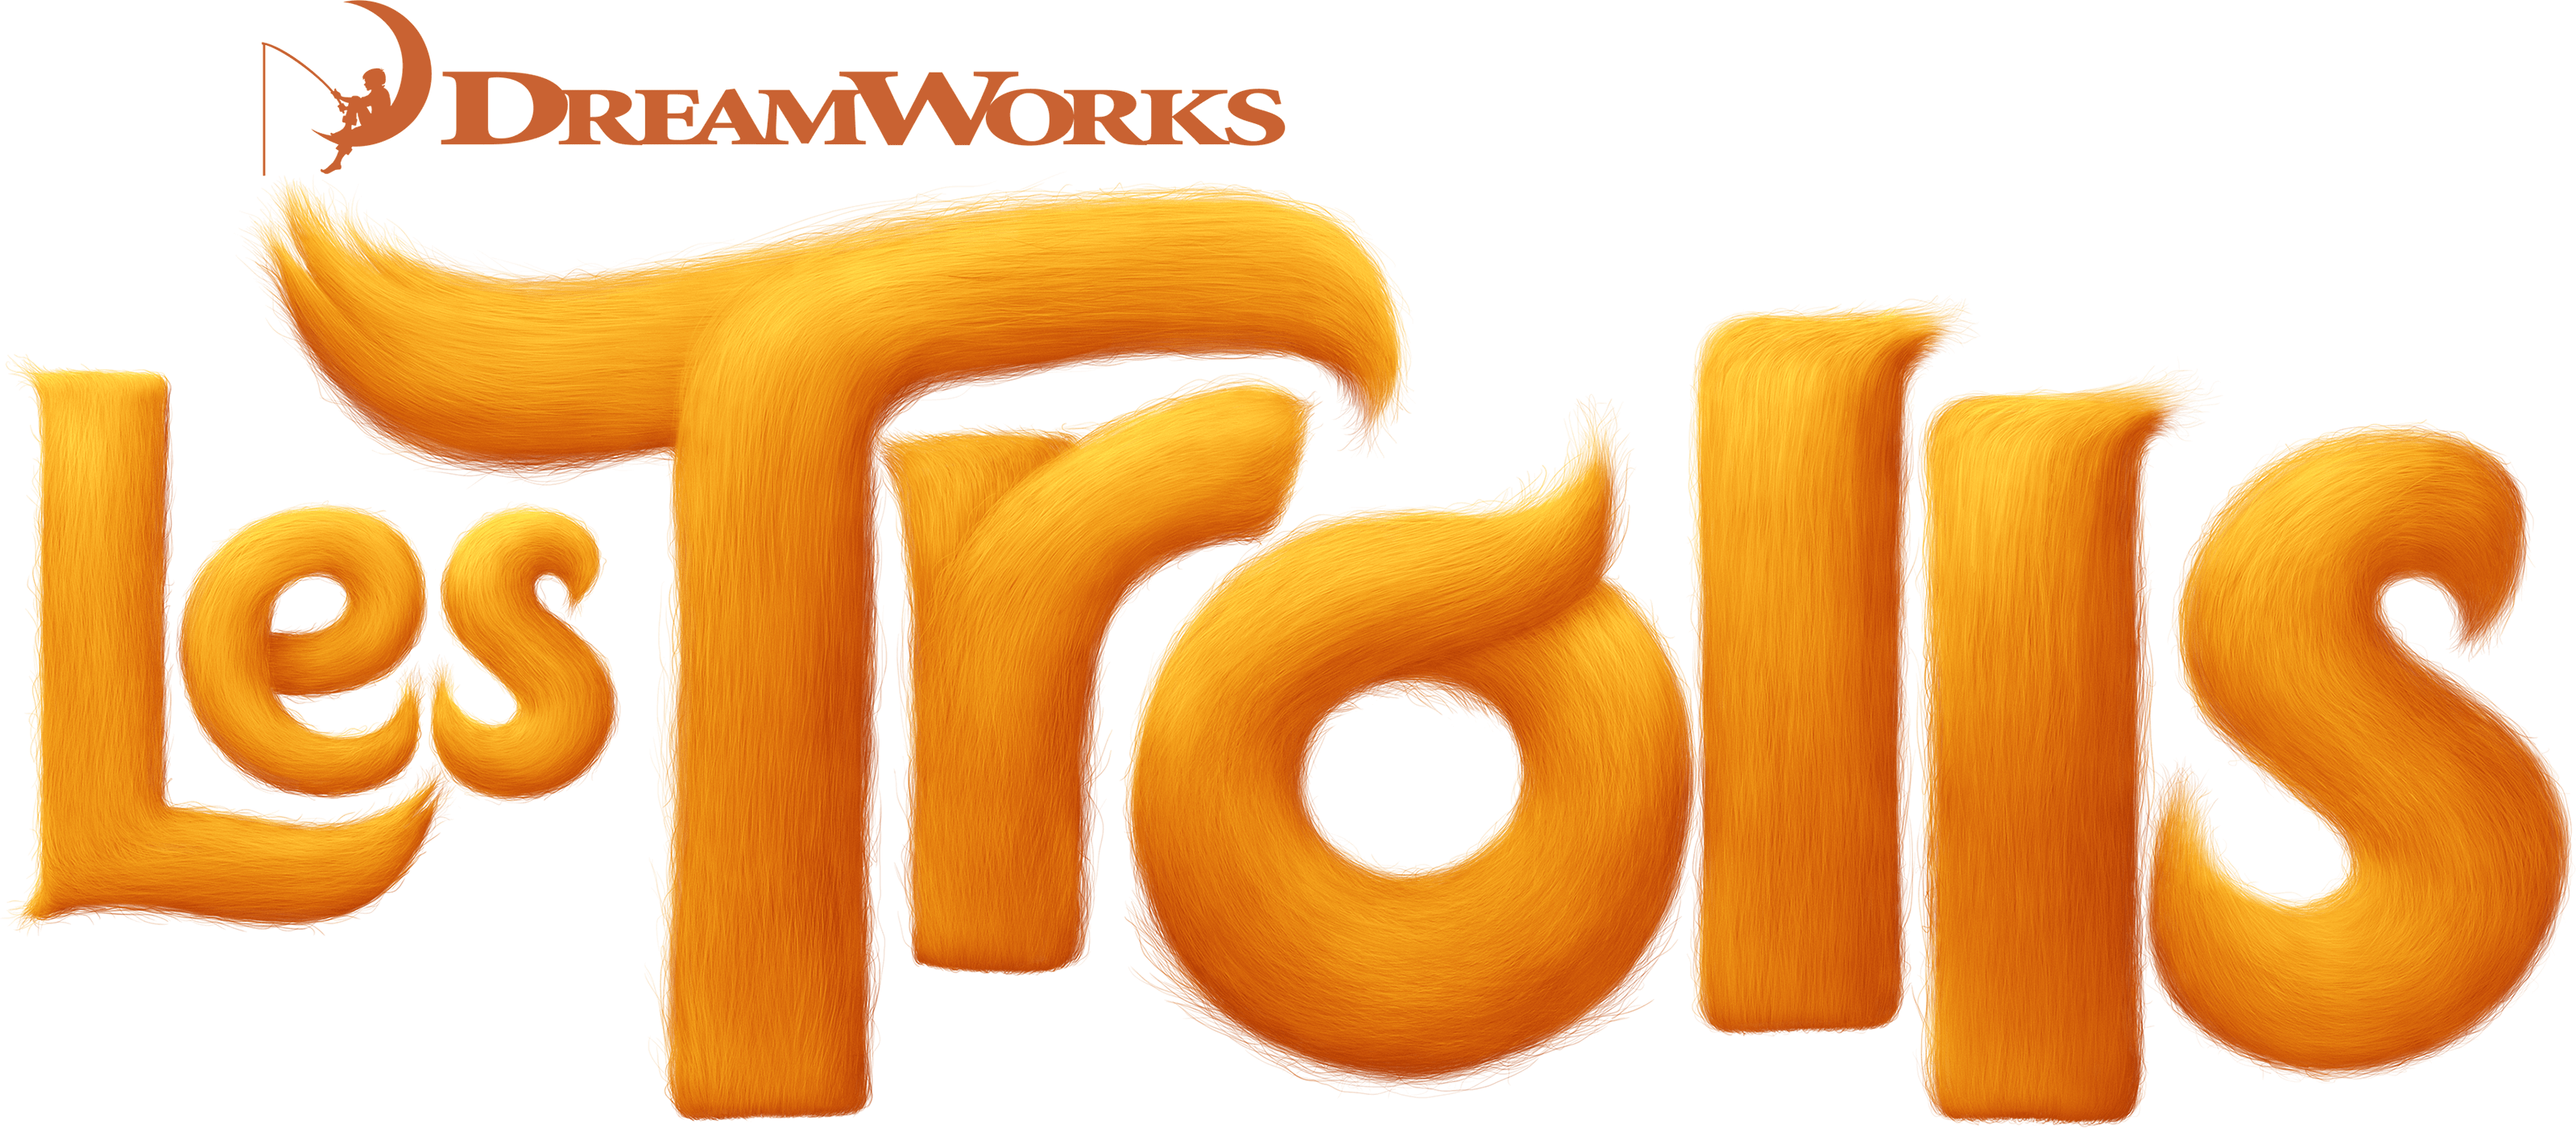 Trolls Logo Dreamworks Animation